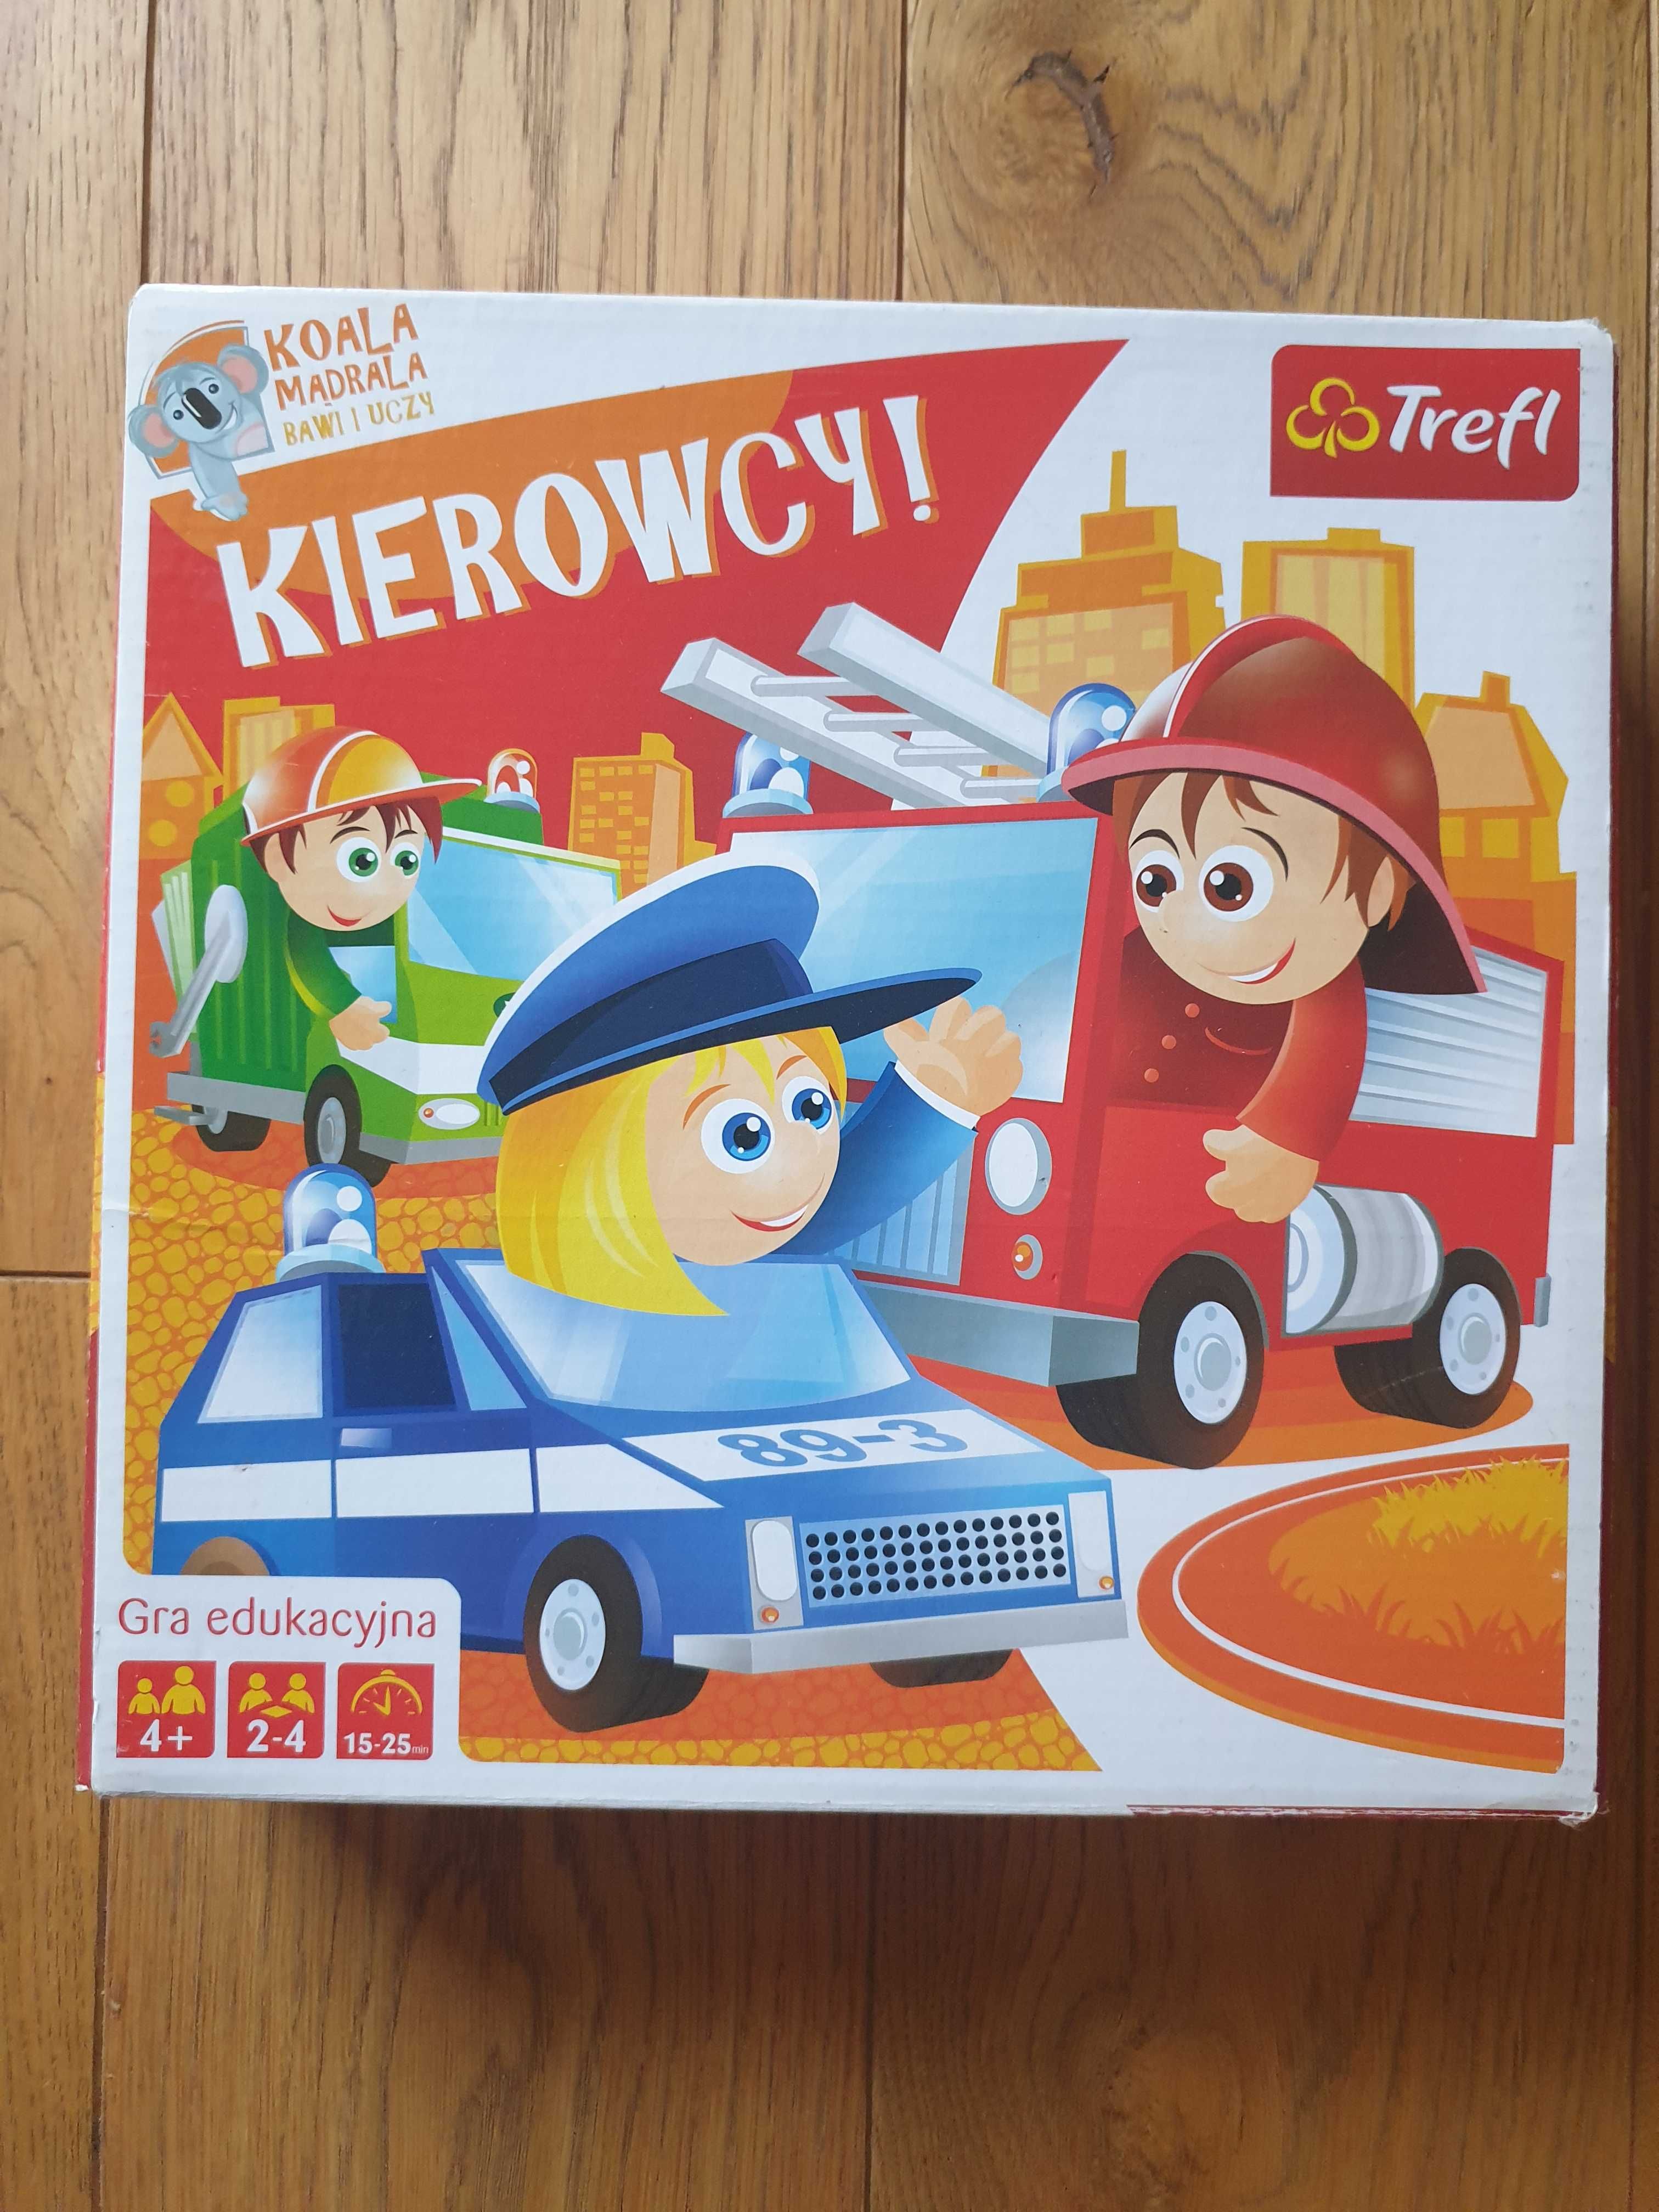 Trefl, Kierowcy, gra edukacyjna dla dzieci